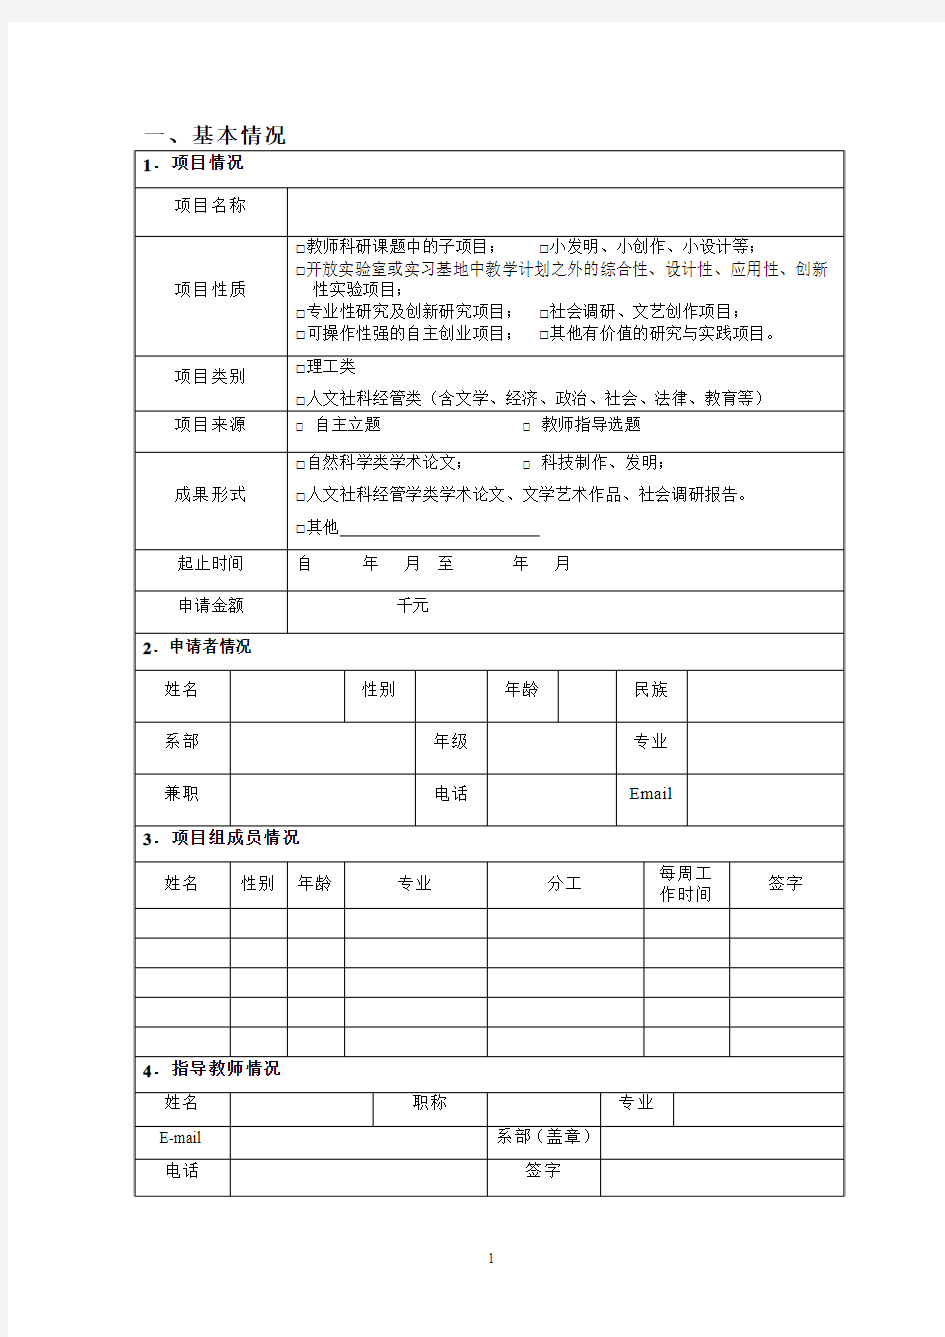 河南城建学院大学生科技创新基金项目申请书